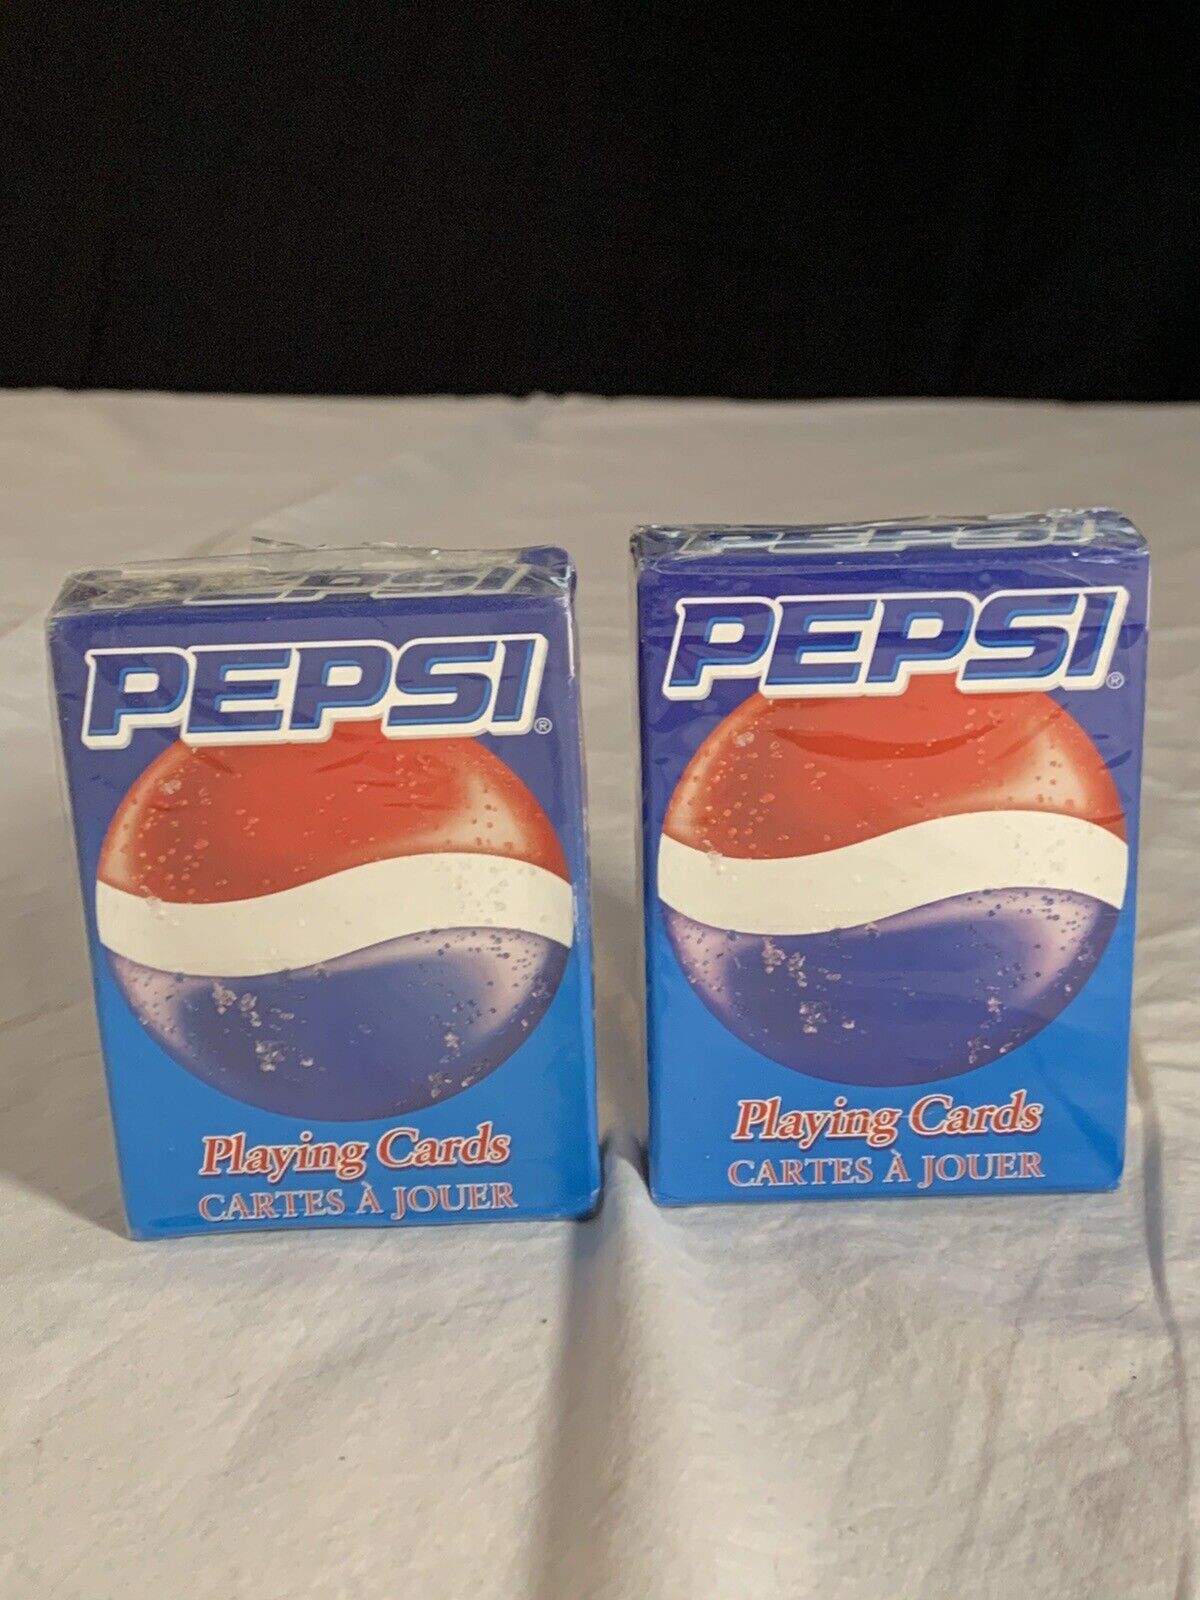 Pepsi Pepsi-Cola Playing Cards  2 DECKS NEW SEALED IN BOX Carta Mindi #1370